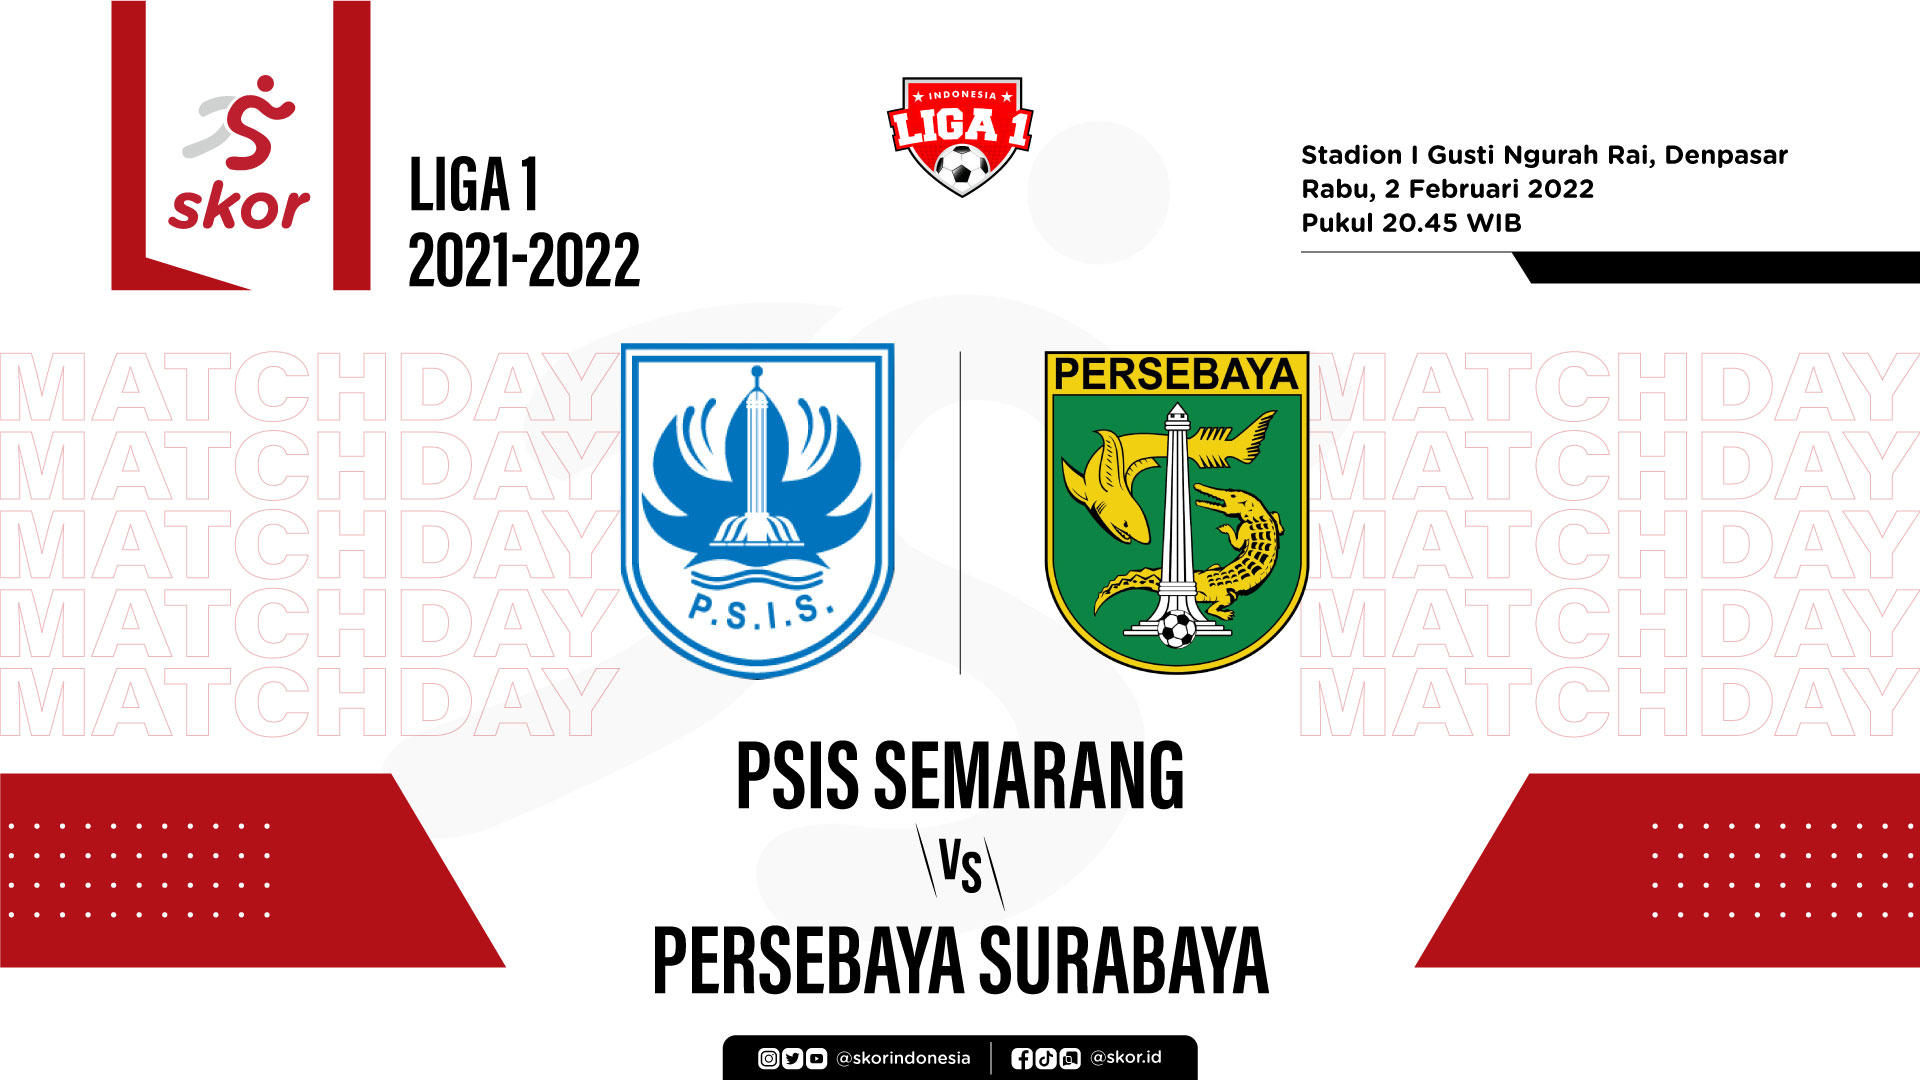 PSIS Semarang vs Persebaya Surabaya: Prediksi dan Link Live Streaming